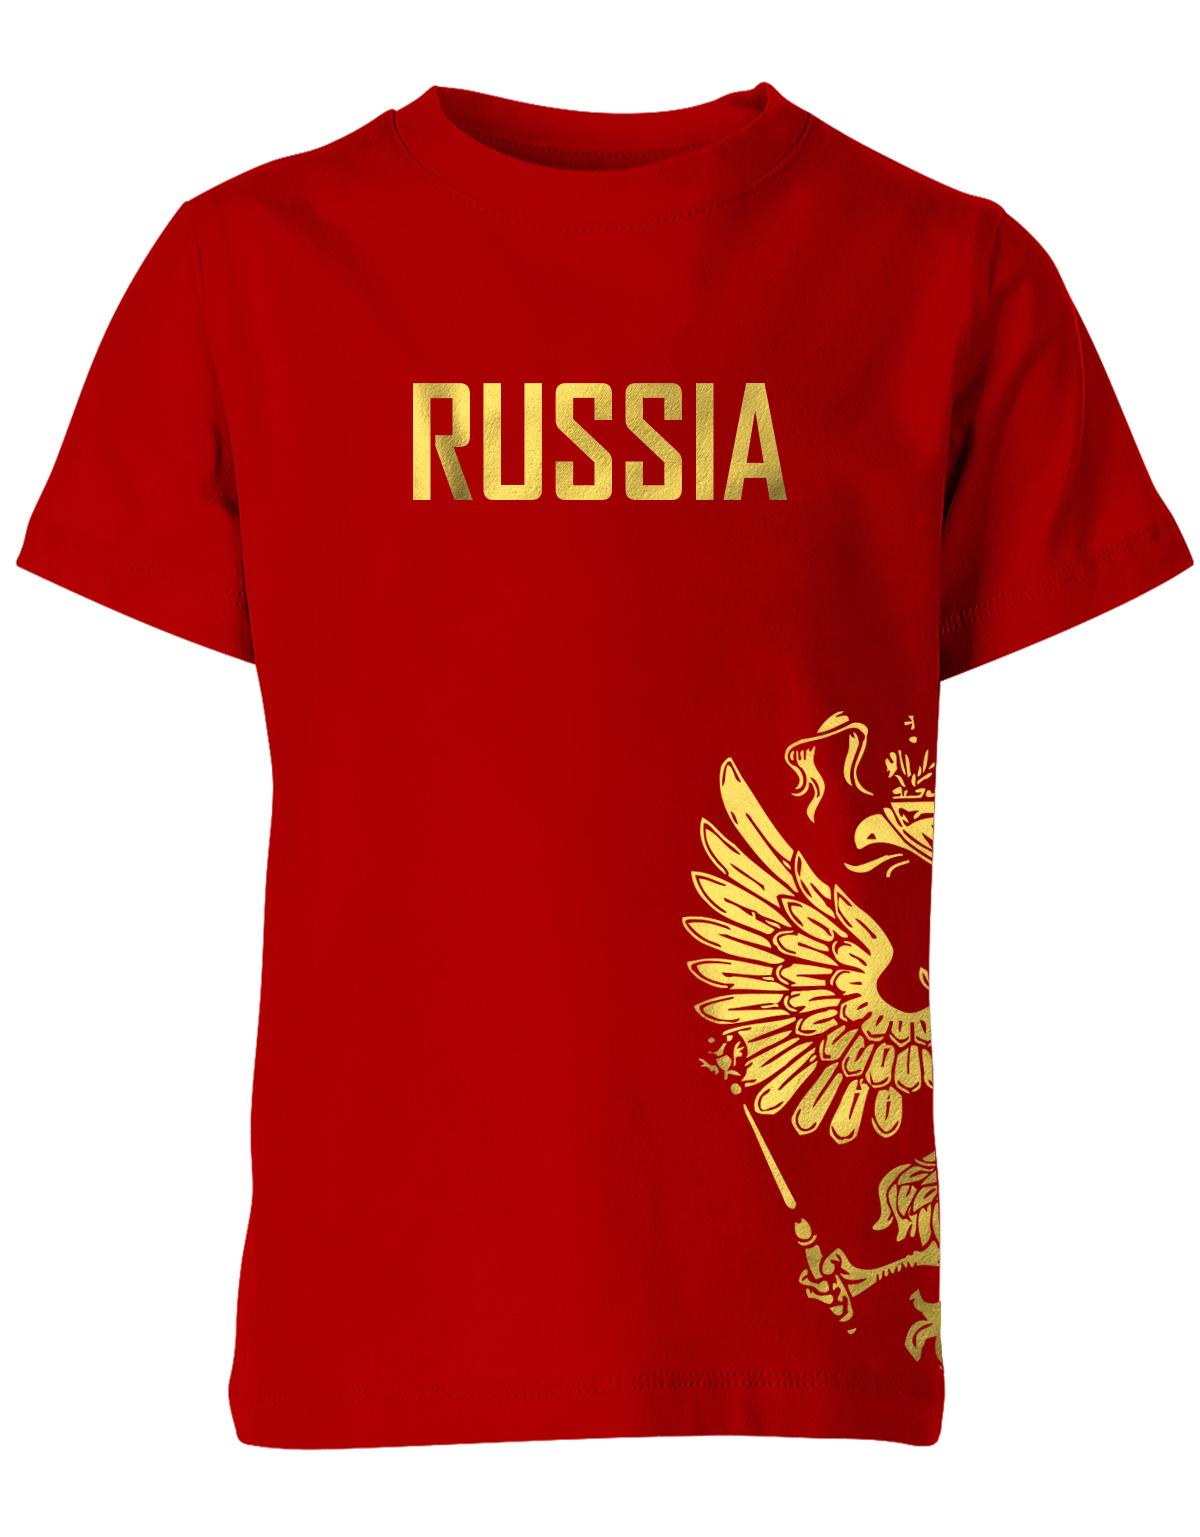 Russia-Adler-Kinder-Rot